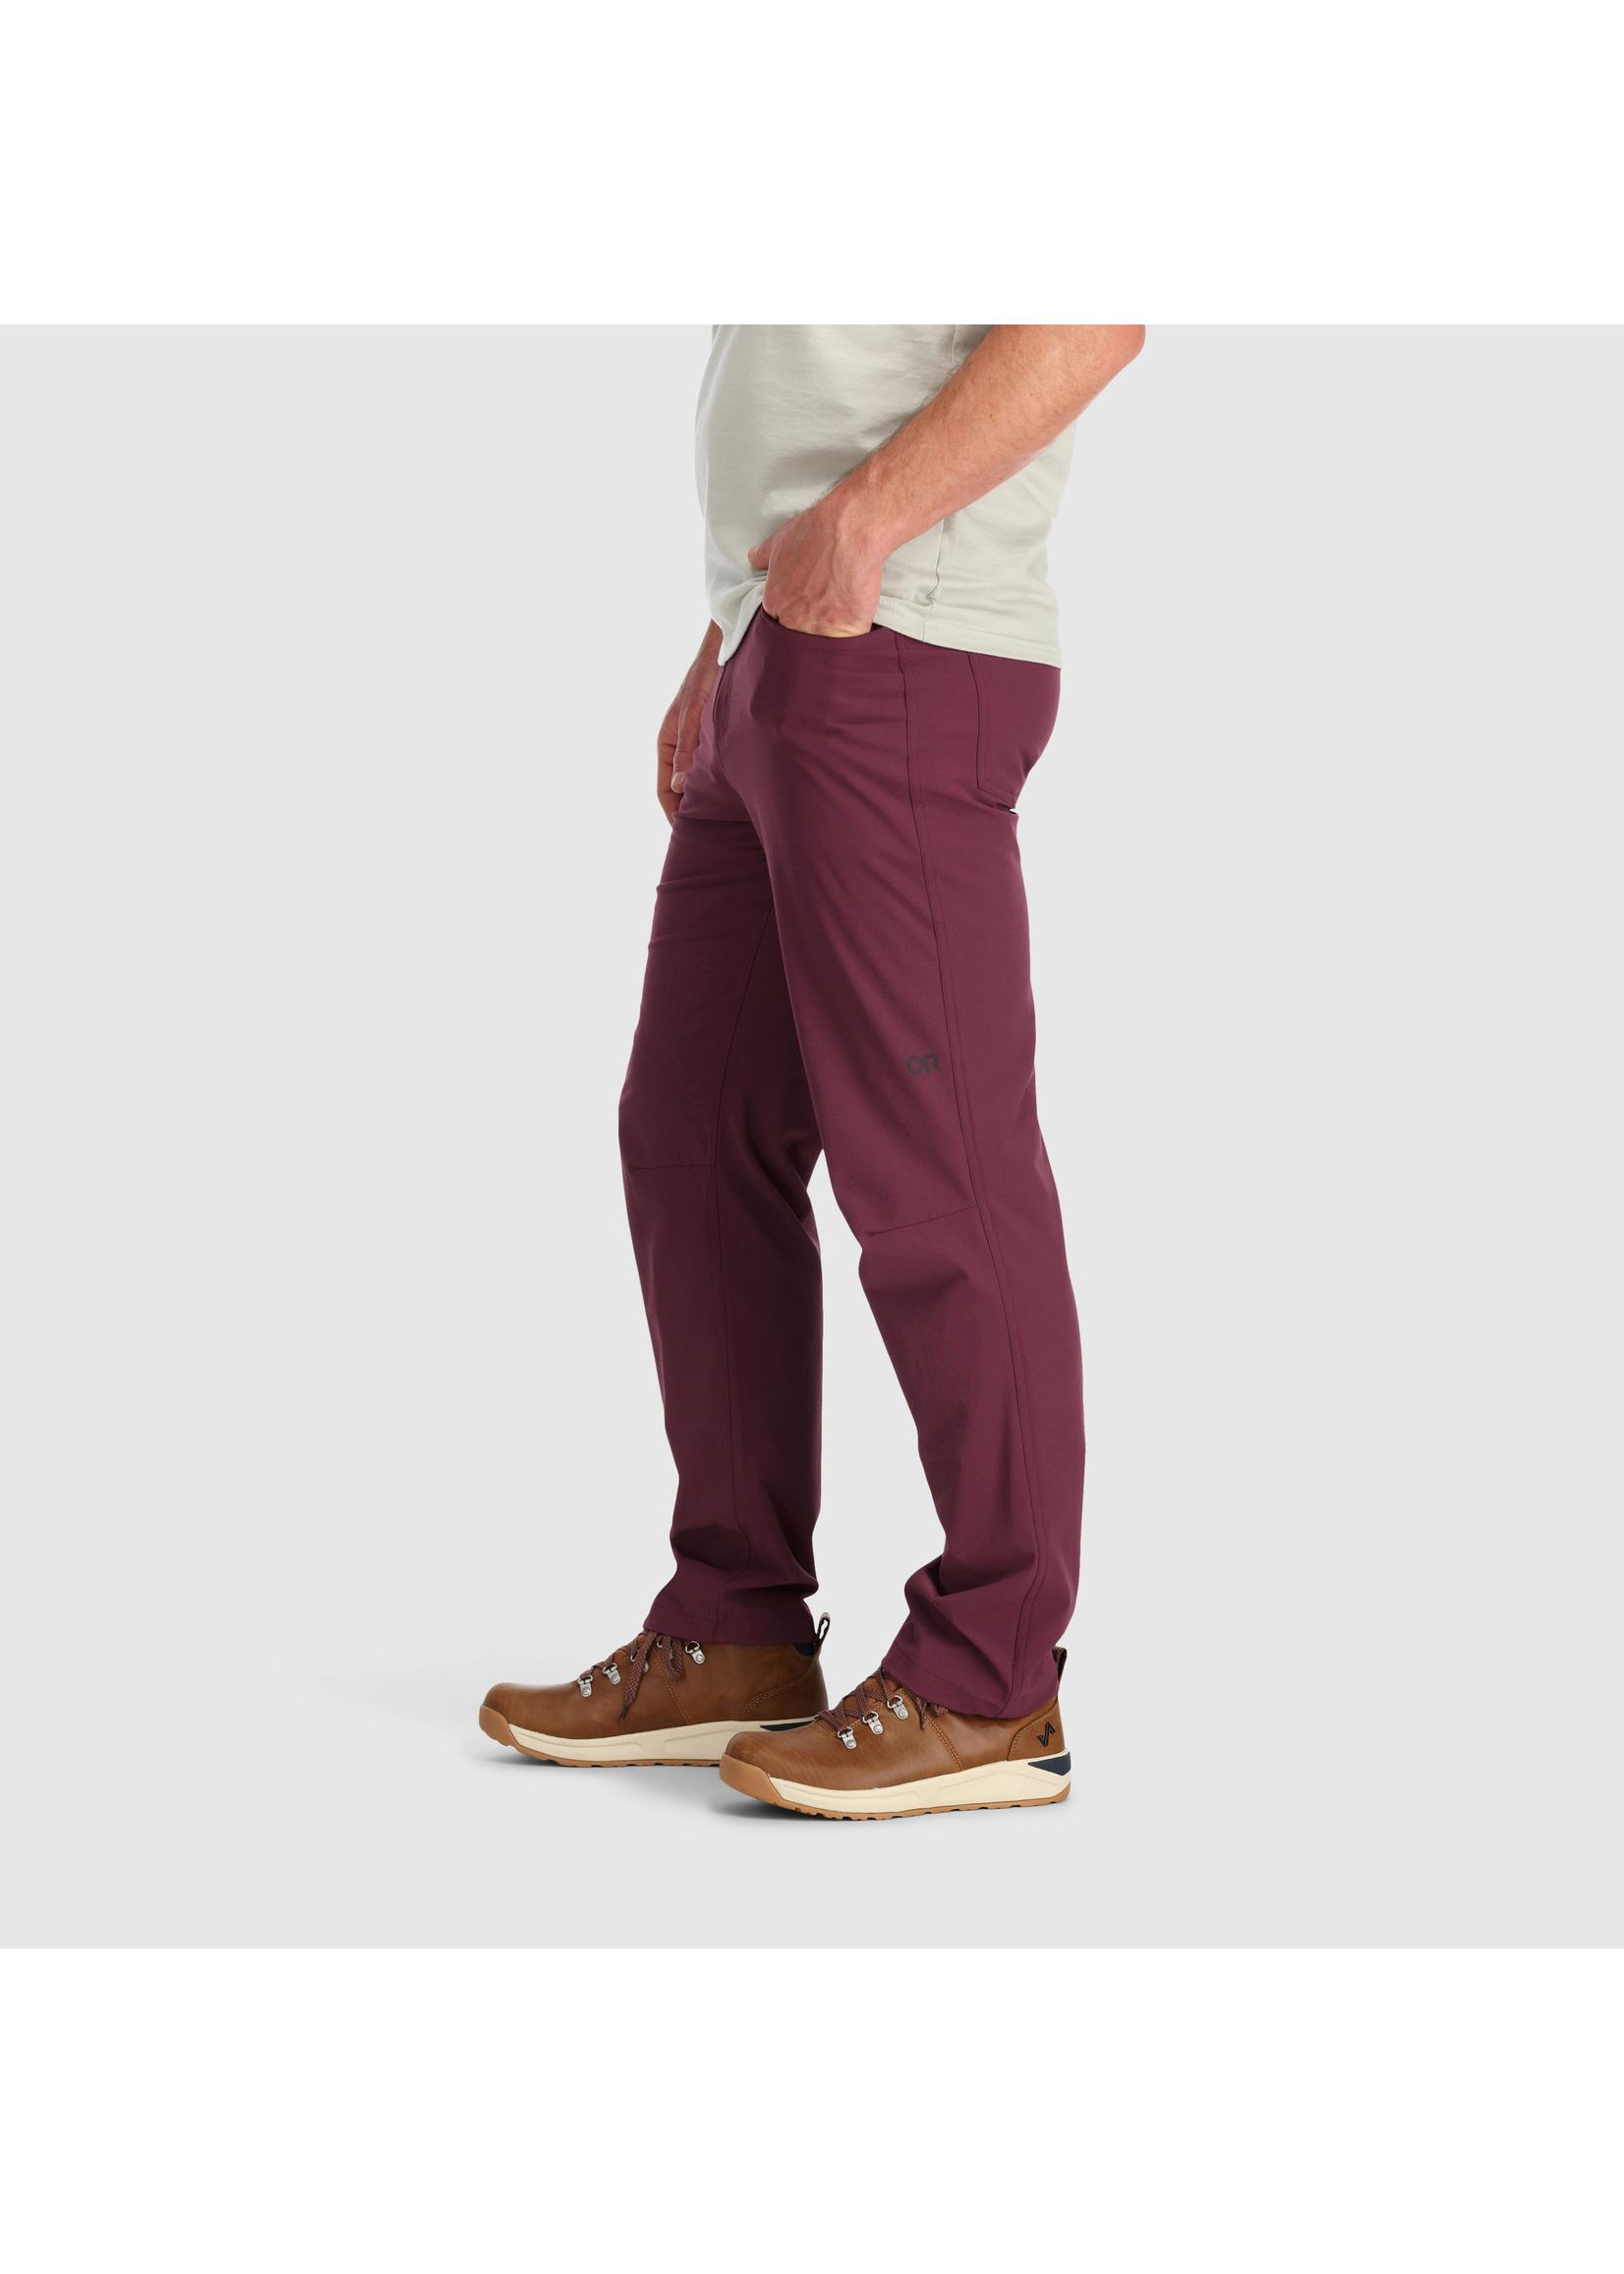 Outdoor Research Men's Ferrosi Pants, 32" Inseam